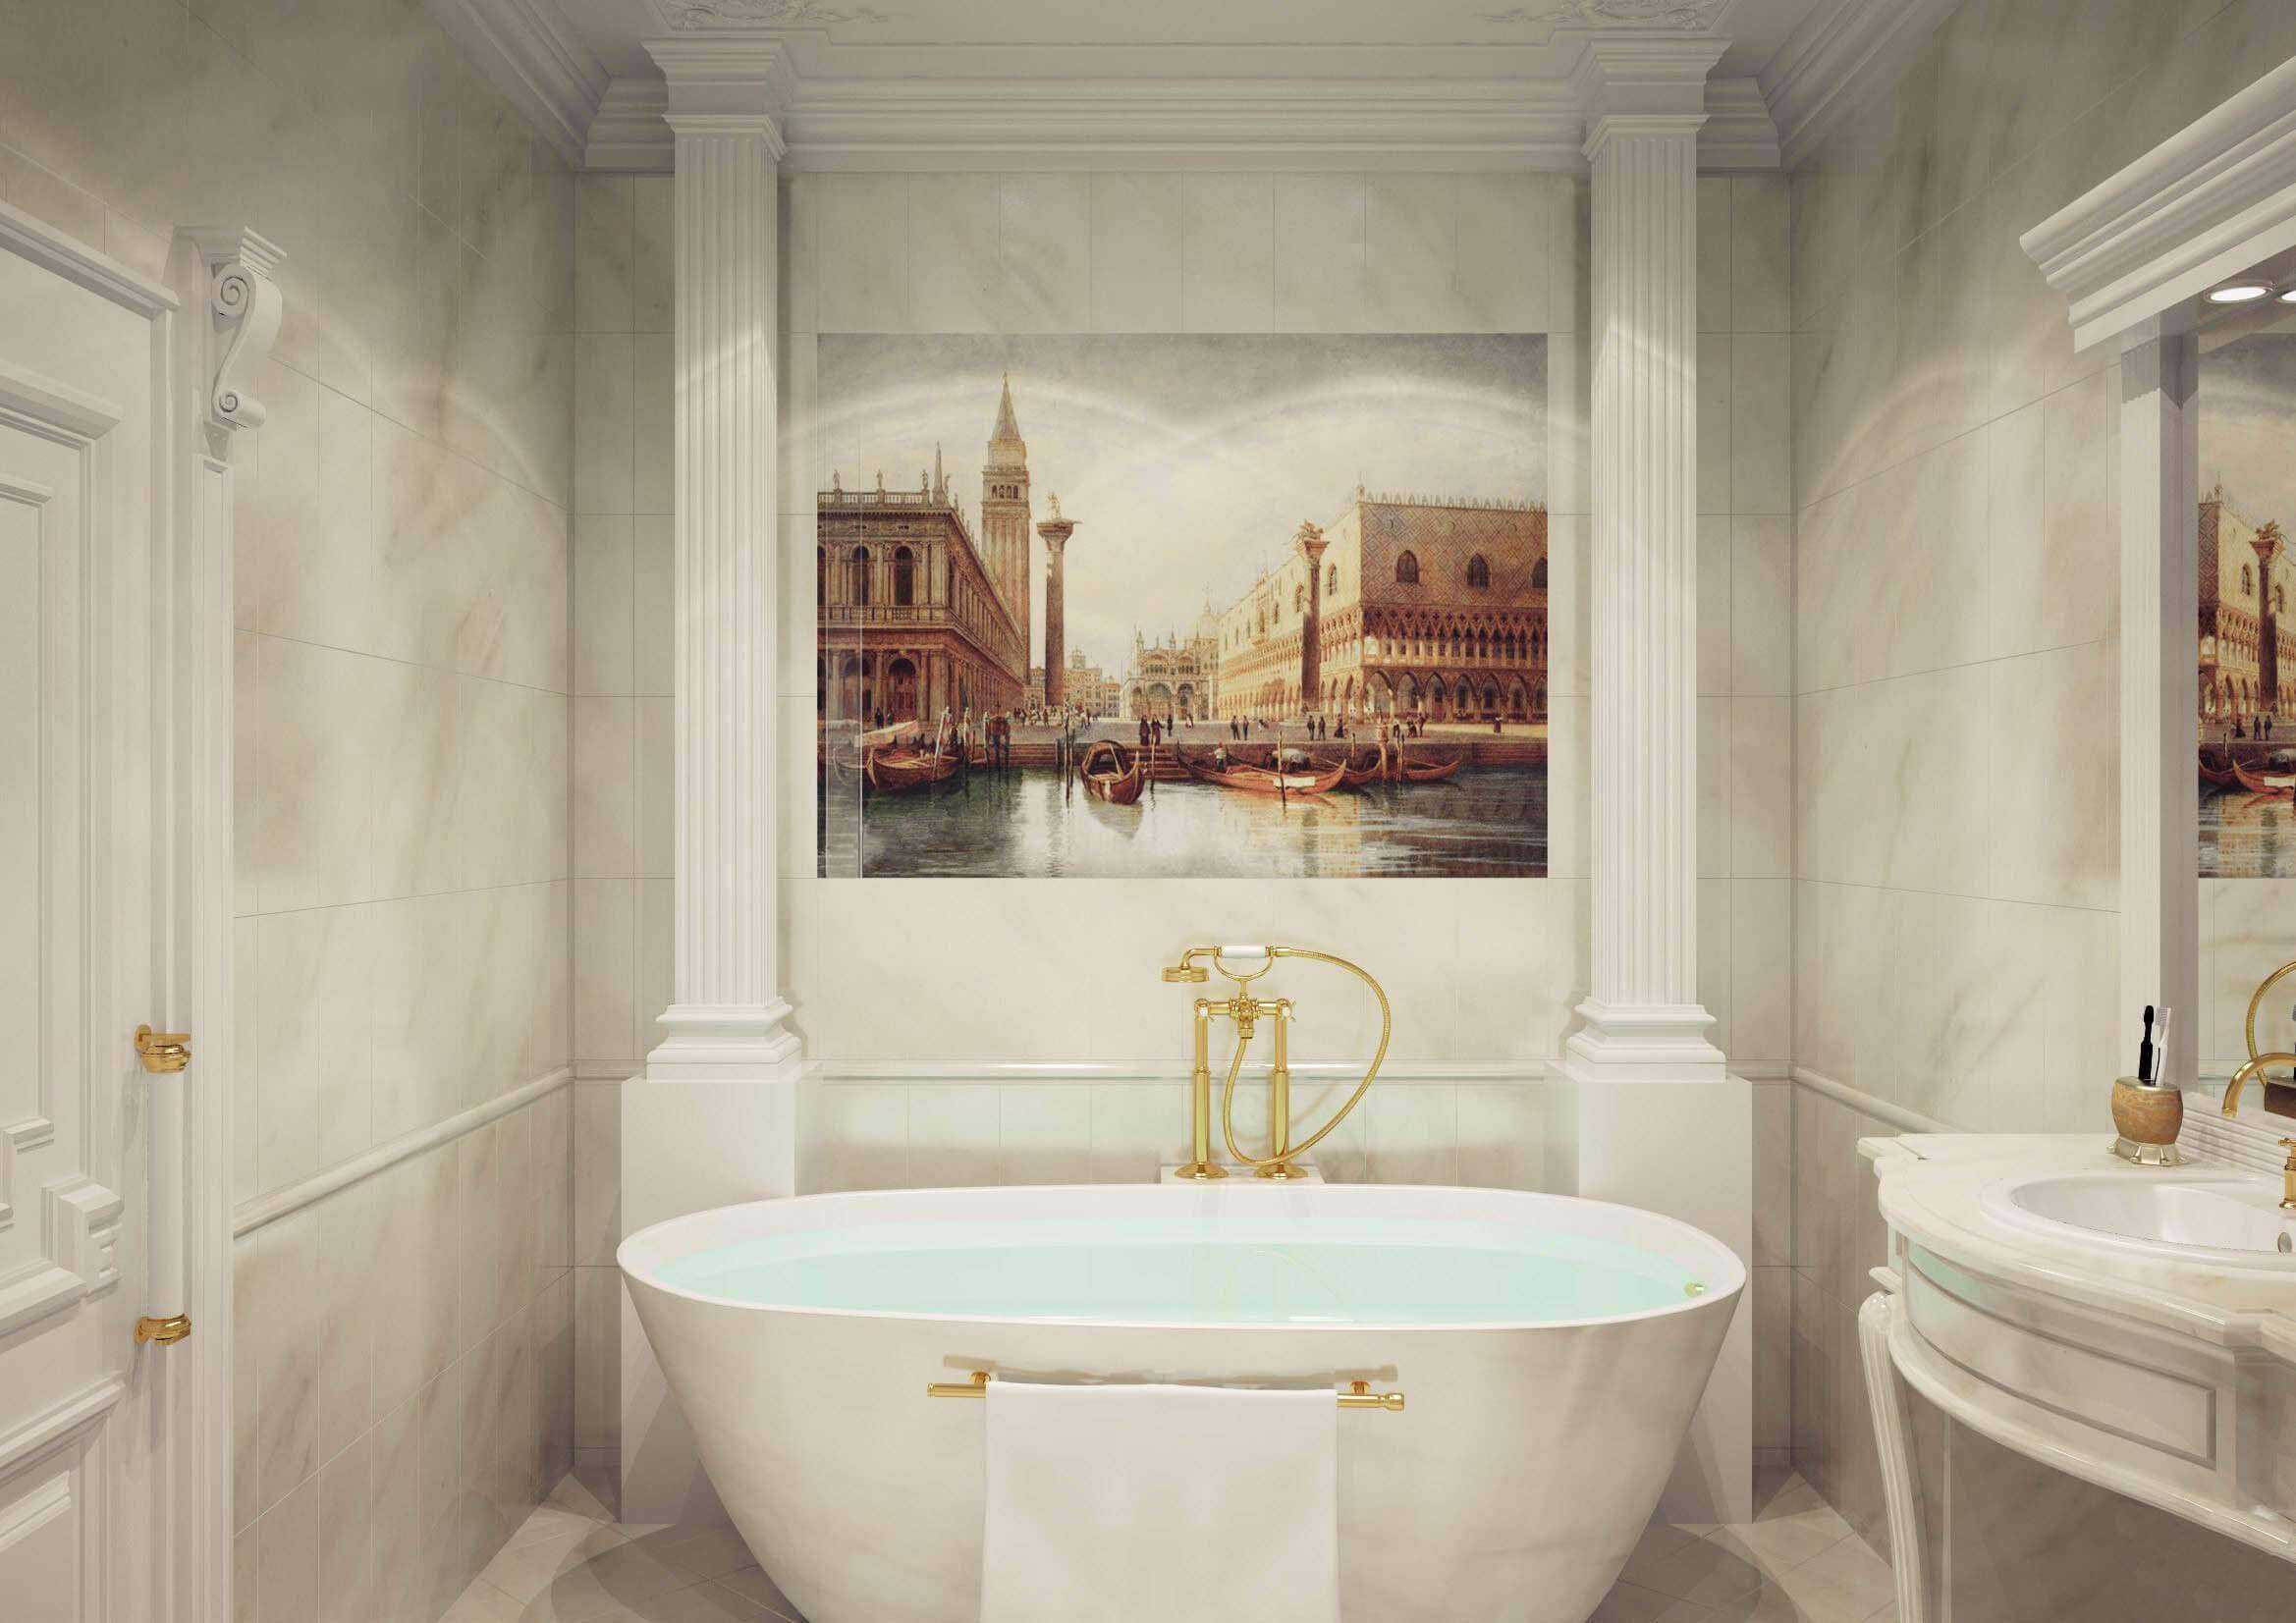 Ванная комната в стиле барокко имеет не так много поклонников и смотрится необычно Какие детали характеризуют дизайн и интерьер ванной в этом стиле и какую мебель стоит подобрать